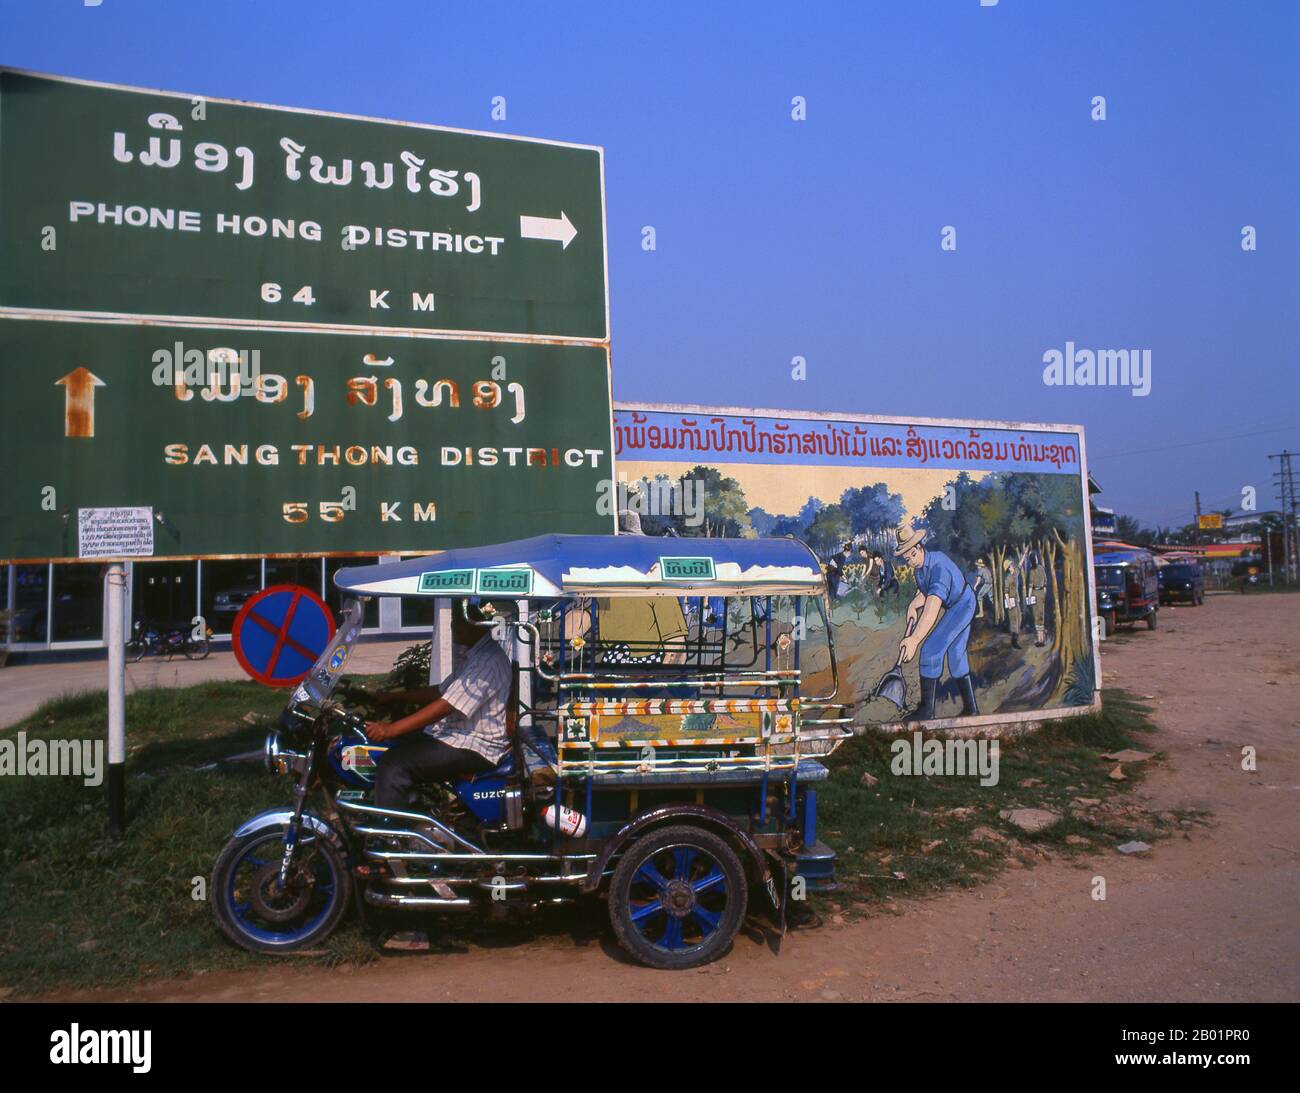 Laos: Ein laotischer Jumbo (Nahverkehr) vor einem politischen Poster im Stil der Revolutionären Sozialisten auf den Straßen von Vientiane. Der sozialistische Realismus ist ein Stil realistischer Kunst, der in der Sowjetunion entwickelt wurde und in anderen kommunistischen Ländern zu einem dominierenden Stil wurde. Der sozialistische Realismus ist ein teleologisch orientierter Stil, dessen Ziel die Förderung der Ziele des Sozialismus und des Kommunismus ist. Obwohl sie damit verbunden ist, darf sie nicht mit dem sozialen Realismus verwechselt werden, einer Art von Kunst, die Themen sozialer Belange realistisch darstellt. Stockfoto